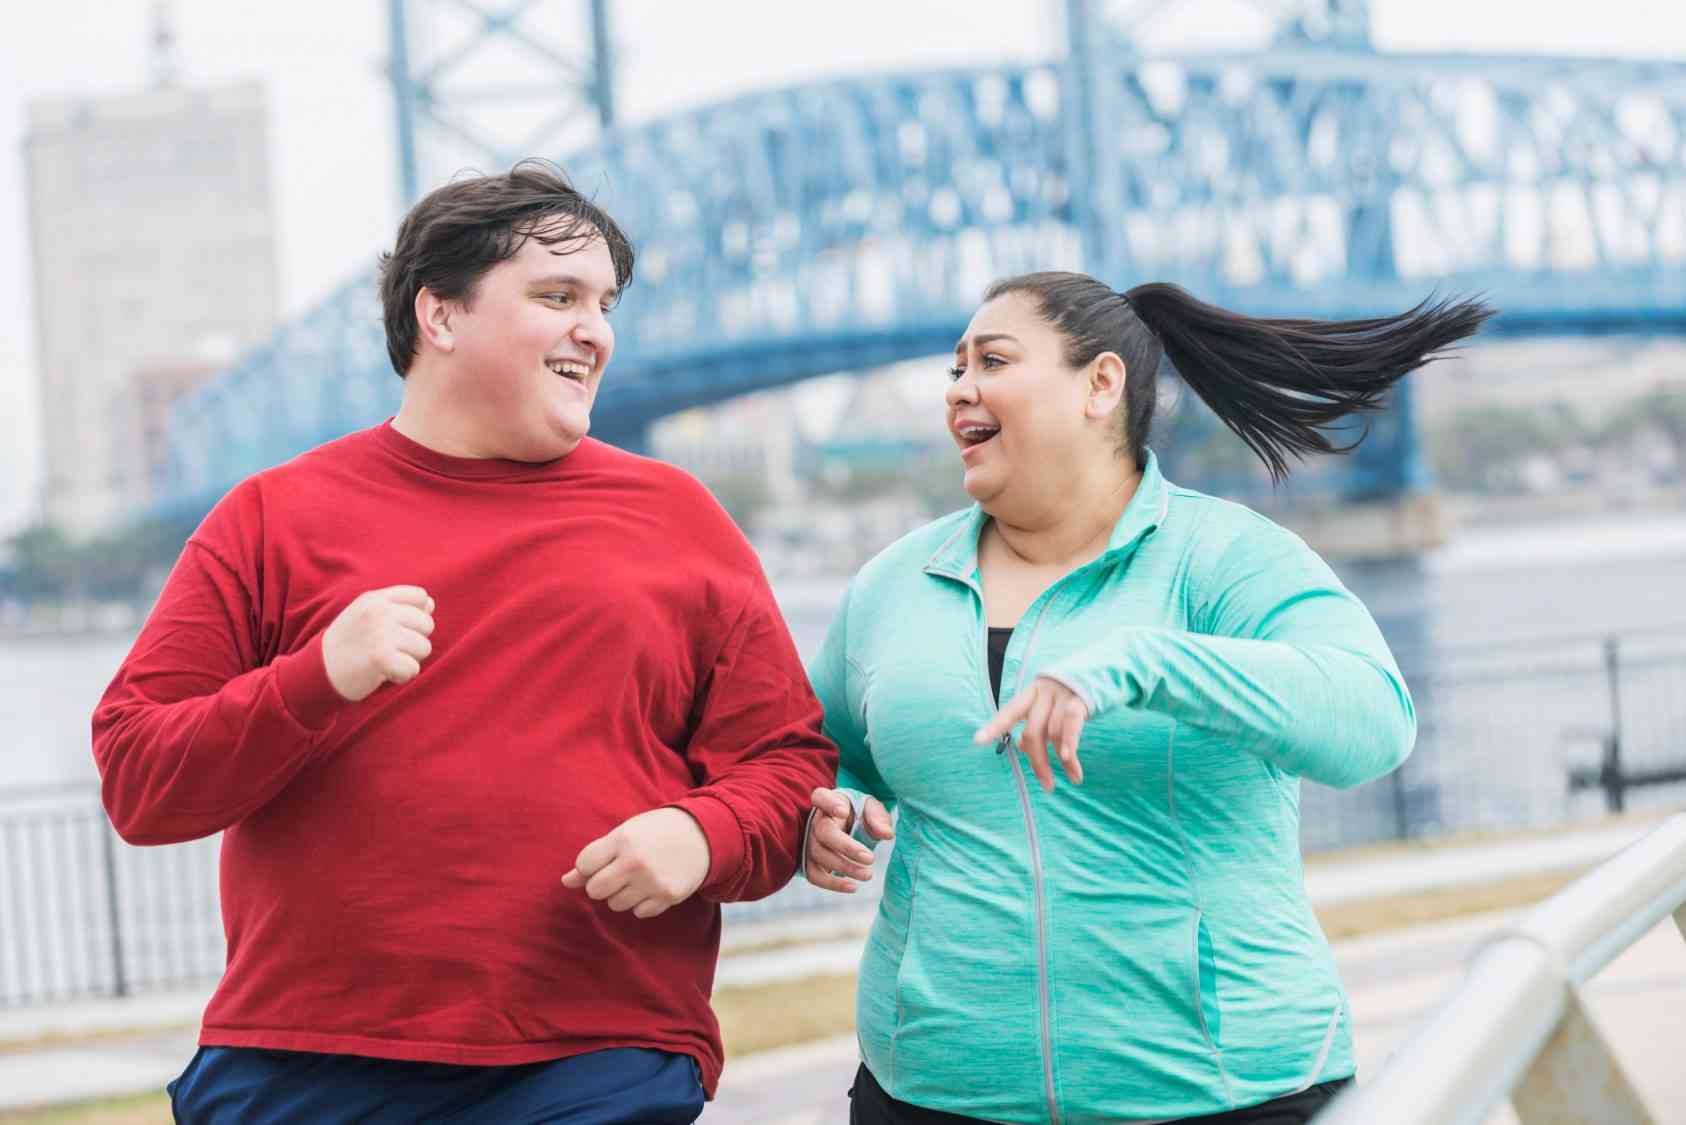 Έφηβοι:-Παχυσαρκία-και-κακός-ύπνος-επηρεάζουν-τη-γνωστική-τους-υγεία